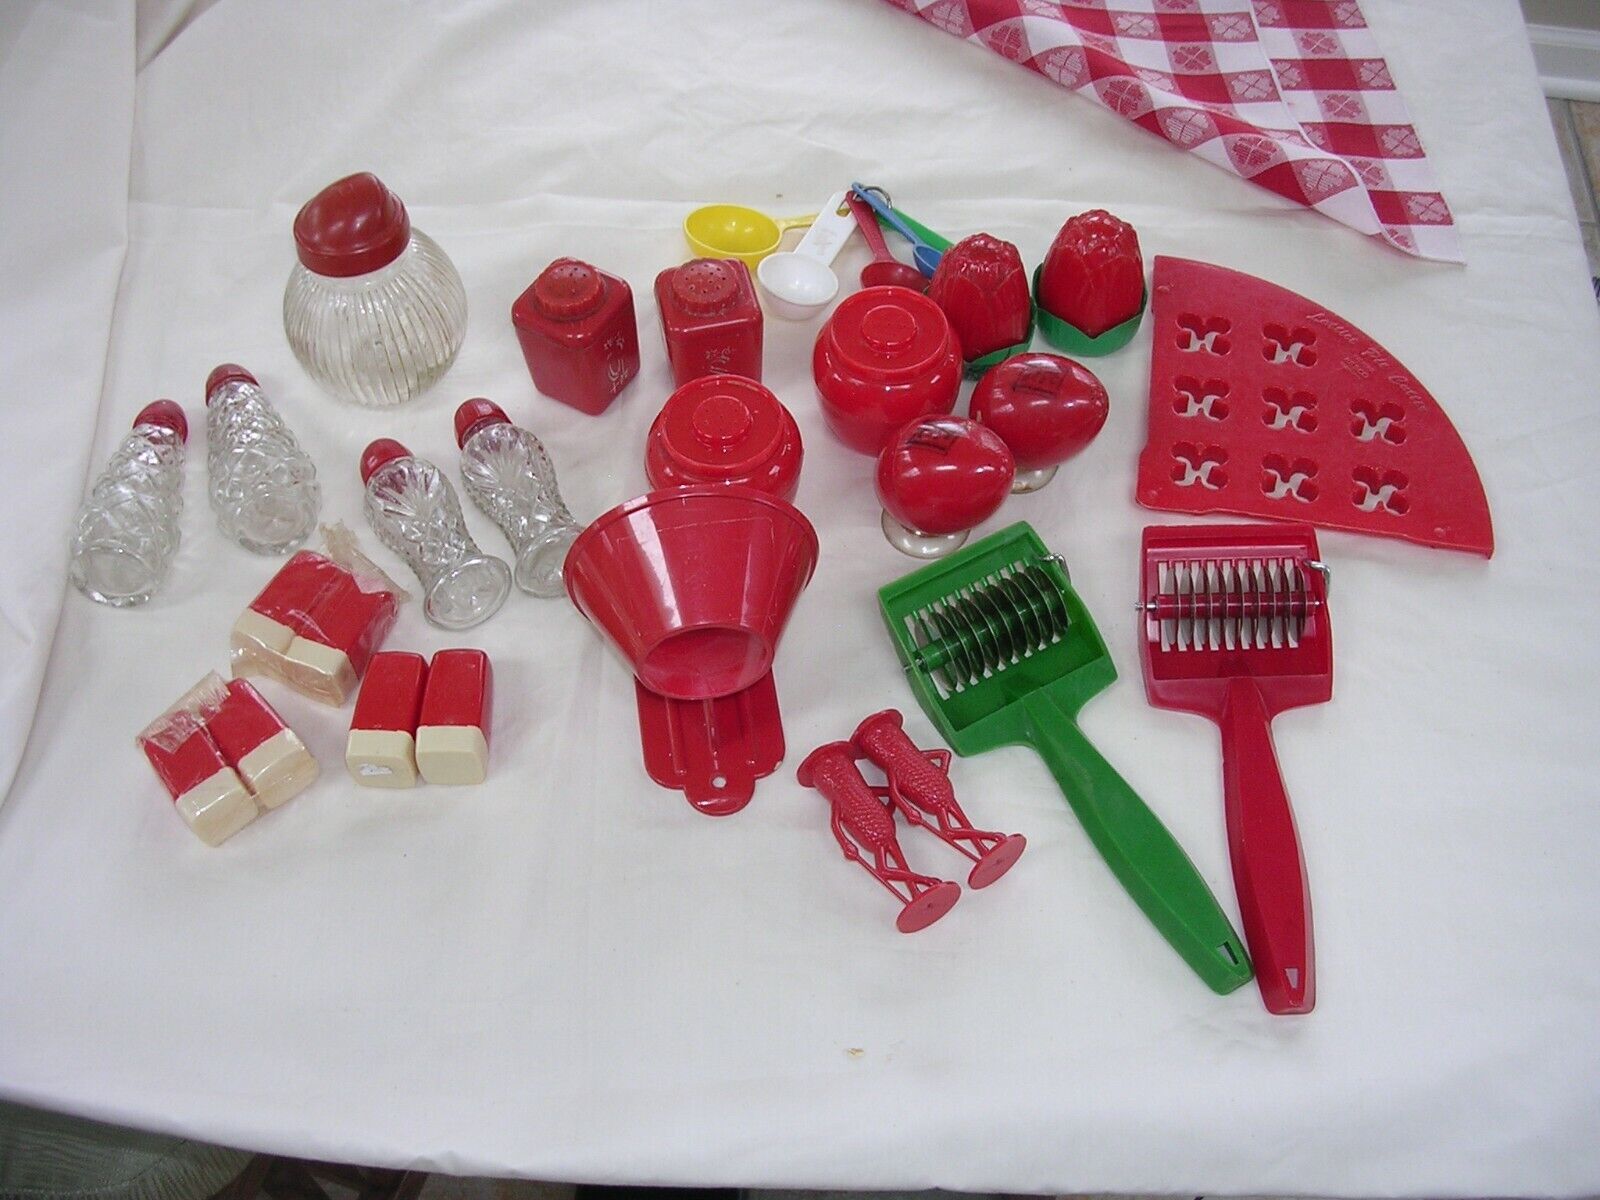 VINTAGE Red mid century 1950s kitsch plastic KITCHEN ITEMS LUSTRO etc Без бренда - фотография #2